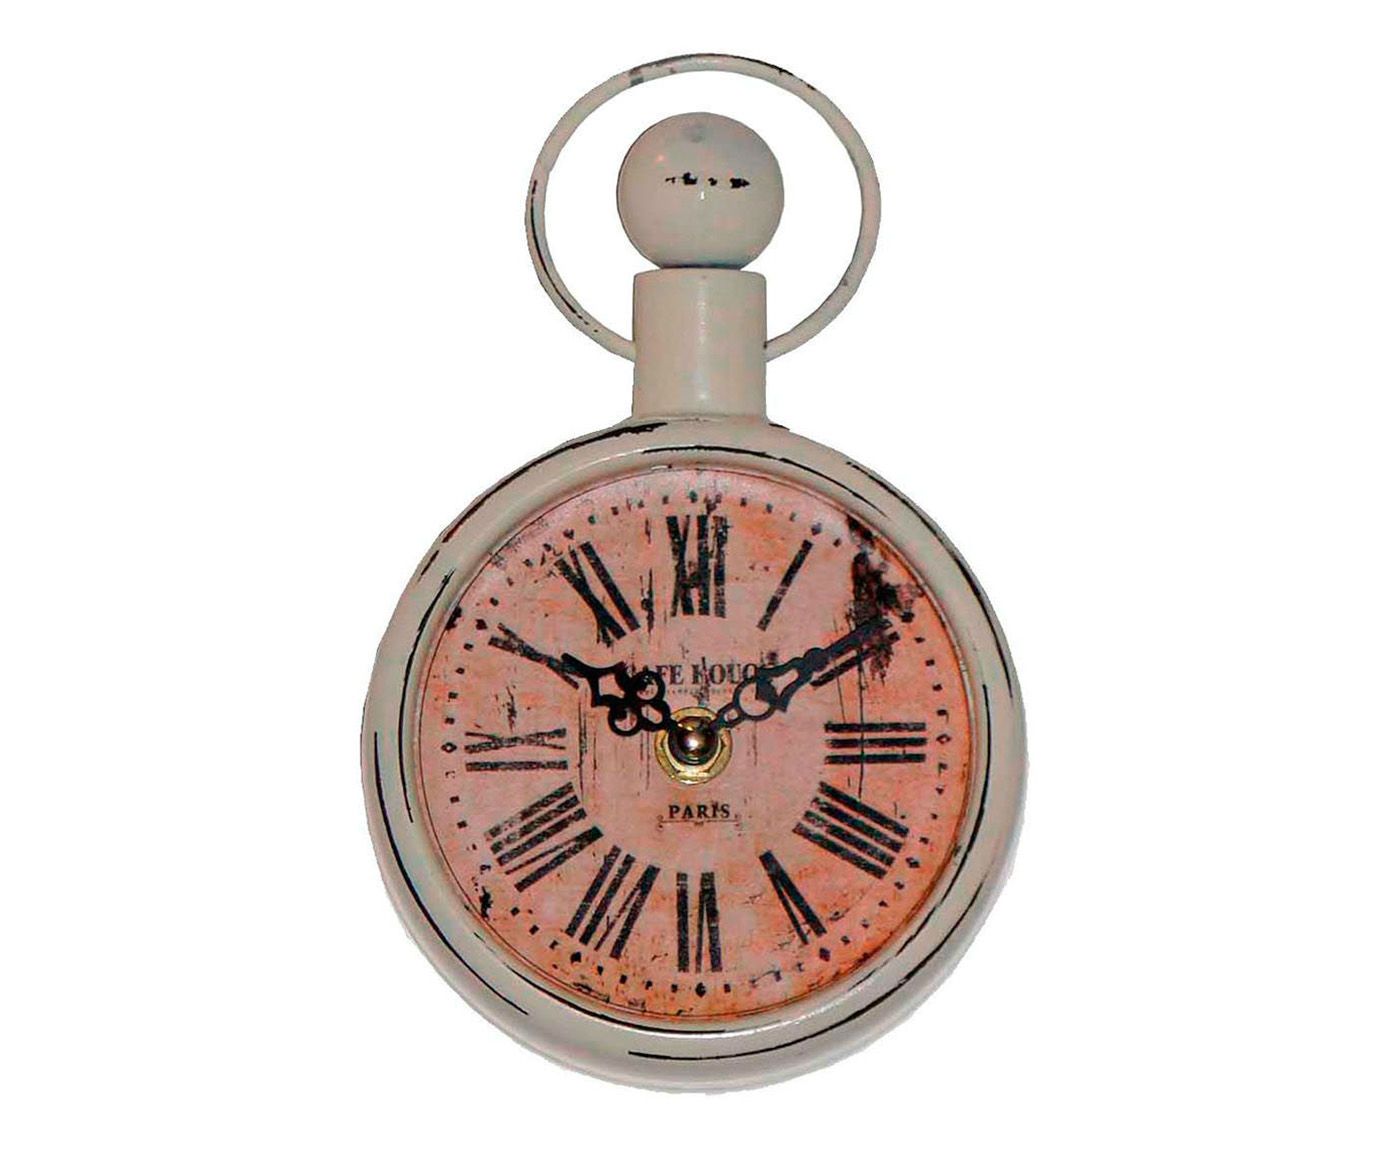 Relógio Old Company Union - 12X18X5cm | Westwing.com.br